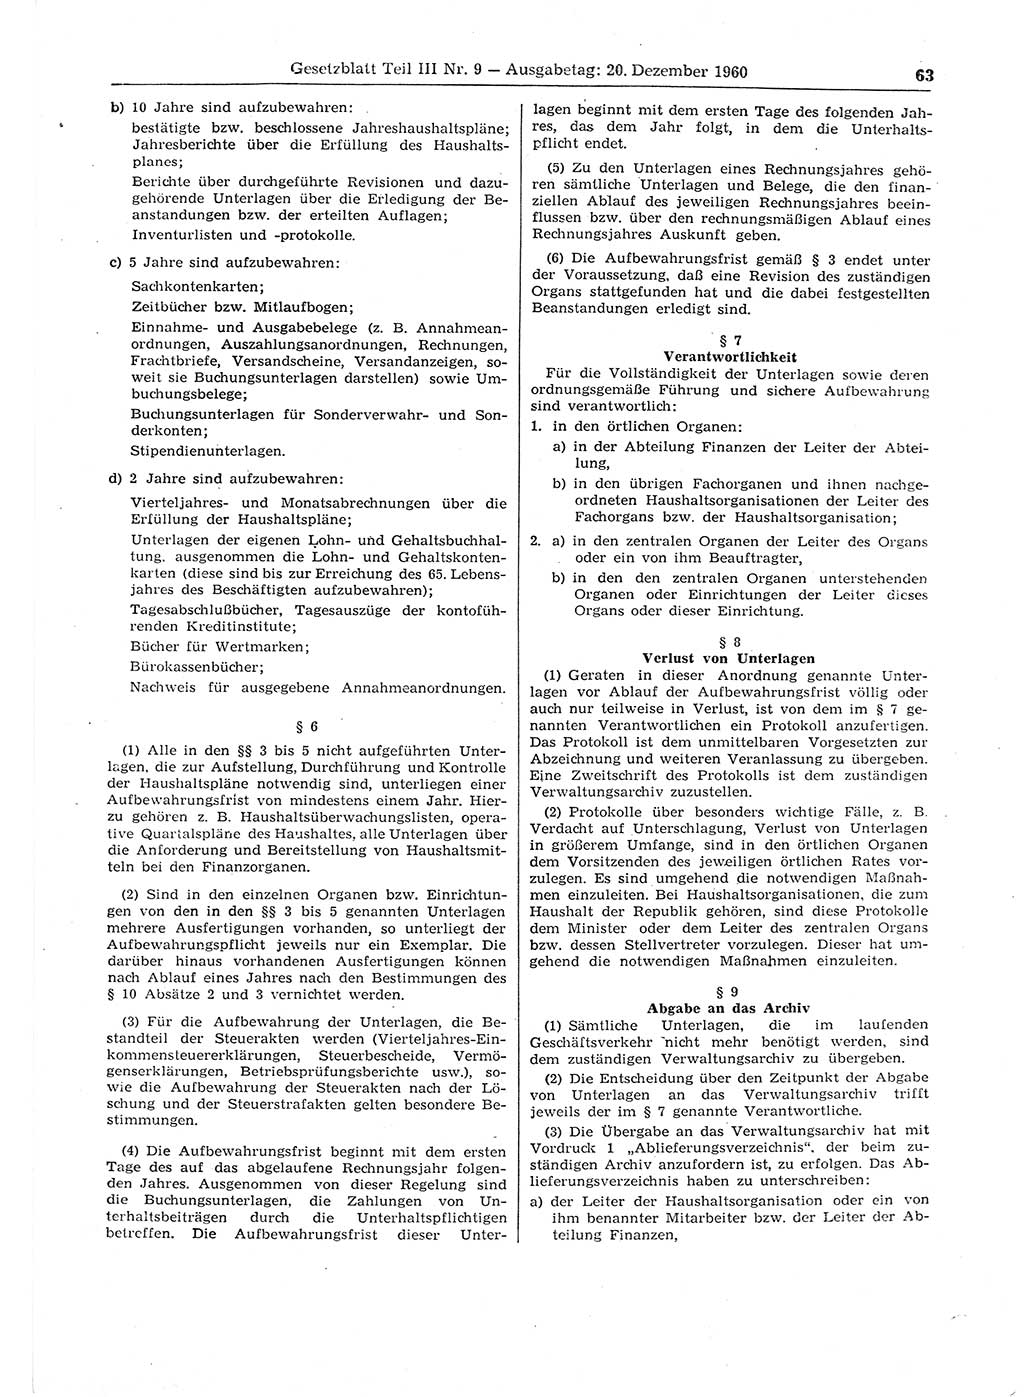 Gesetzblatt (GBl.) der Deutschen Demokratischen Republik (DDR) Teil ⅠⅠⅠ 1960, Seite 63 (GBl. DDR ⅠⅠⅠ 1960, S. 63)